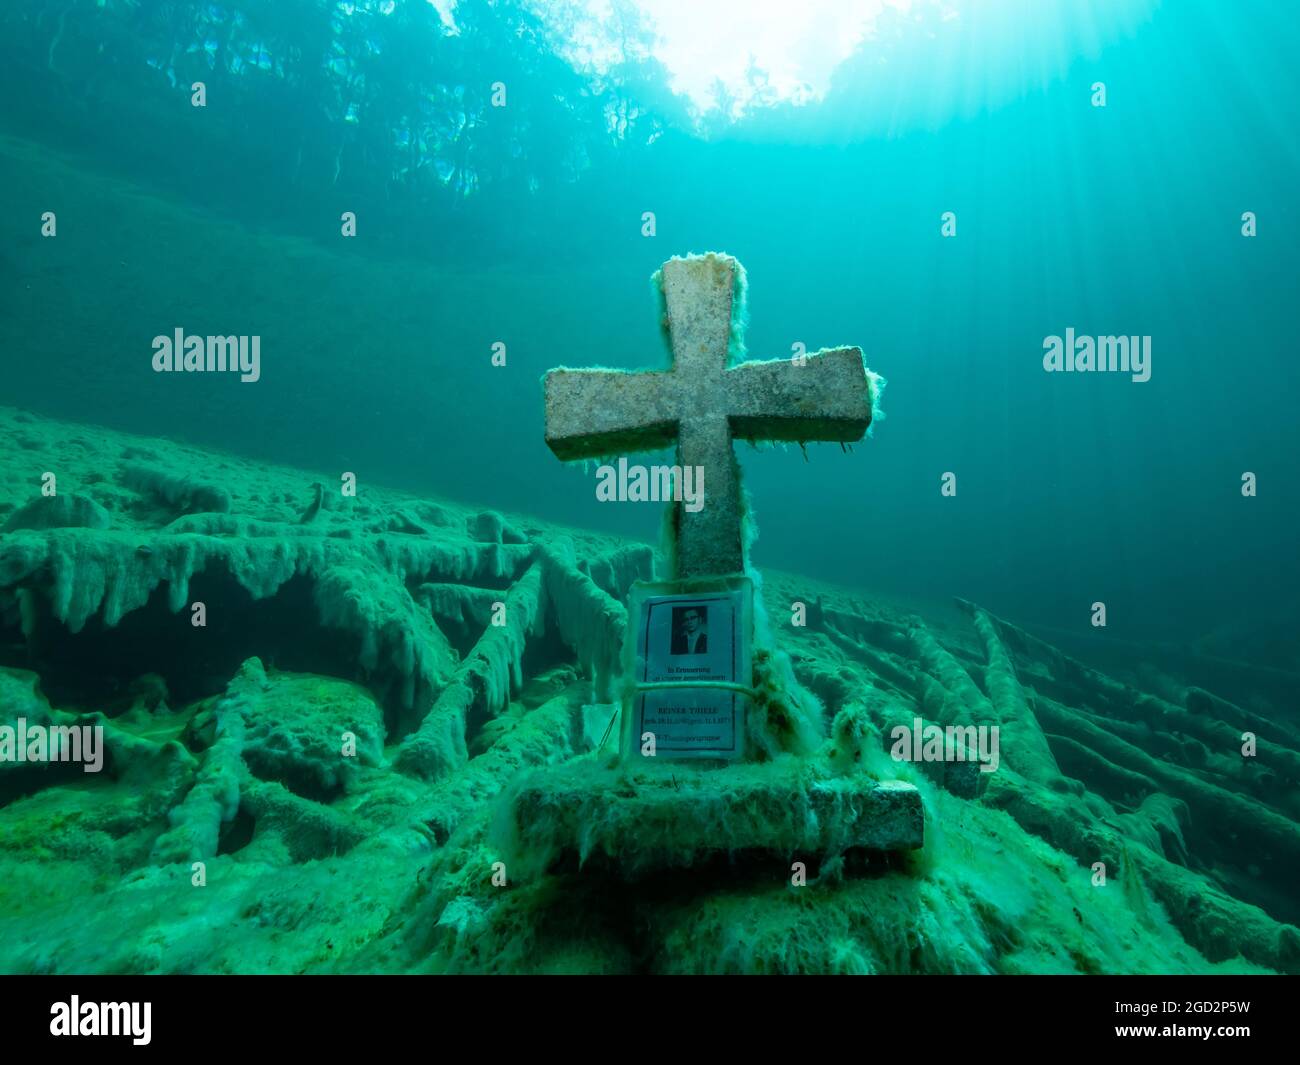 Cruz de piedra bajo el agua en un lago de montaña, buena visibilidad, agua clara y algunos troncos de árboles bajo el agua, reflejo de un bosque en la superficie del agua, Foto de stock